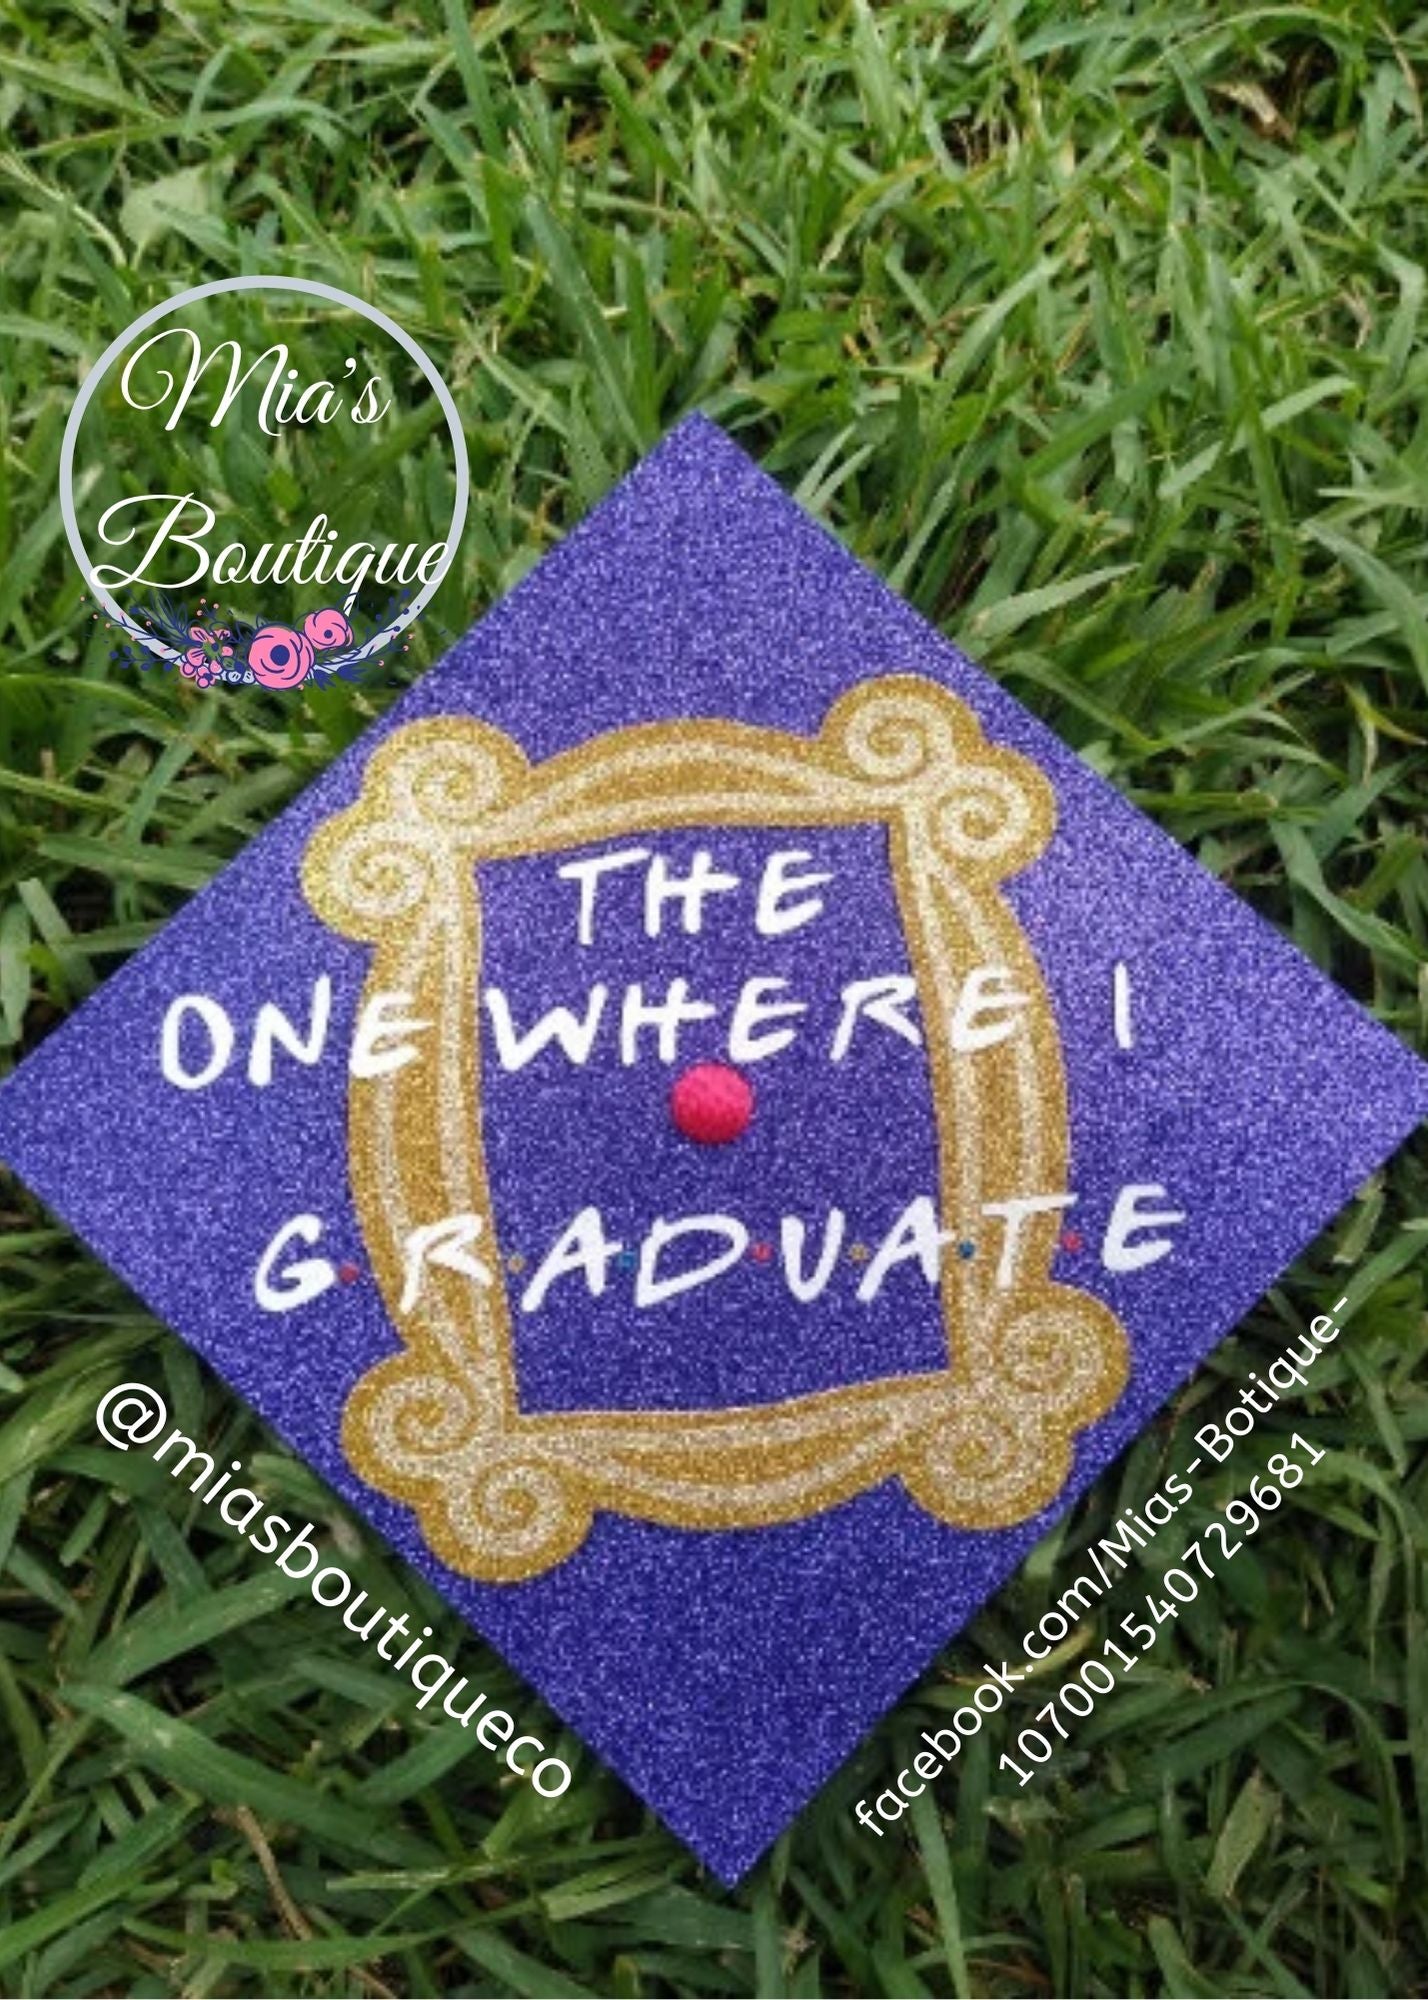 Friends Graduation Cap cover/ Custom Graduation Cap cover